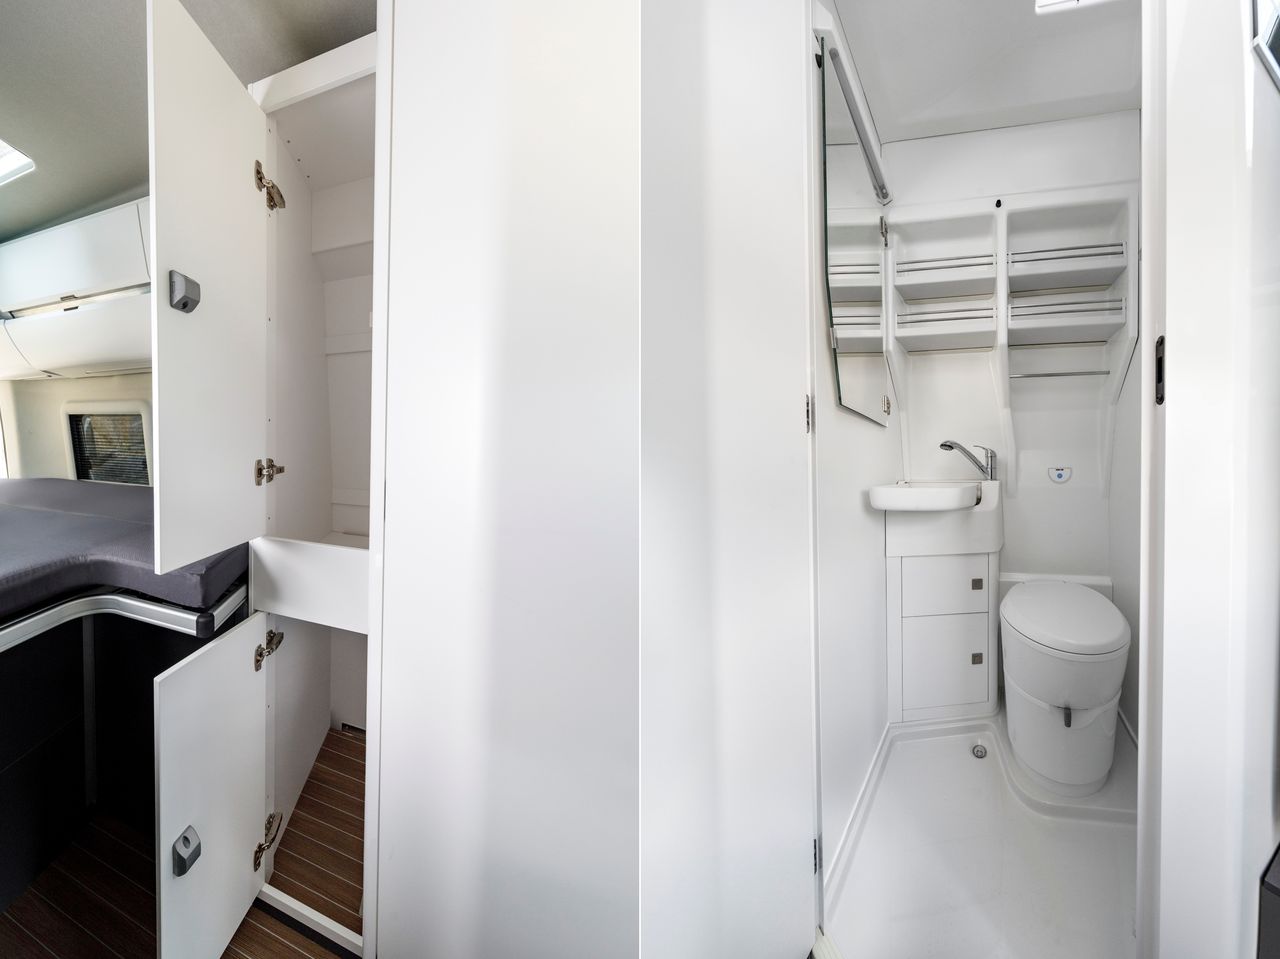 Grand California 680 ma dodatkową szafkę pomiędzy sypialnią, a łazienką. Ta jest identyczna w obu wariantach.